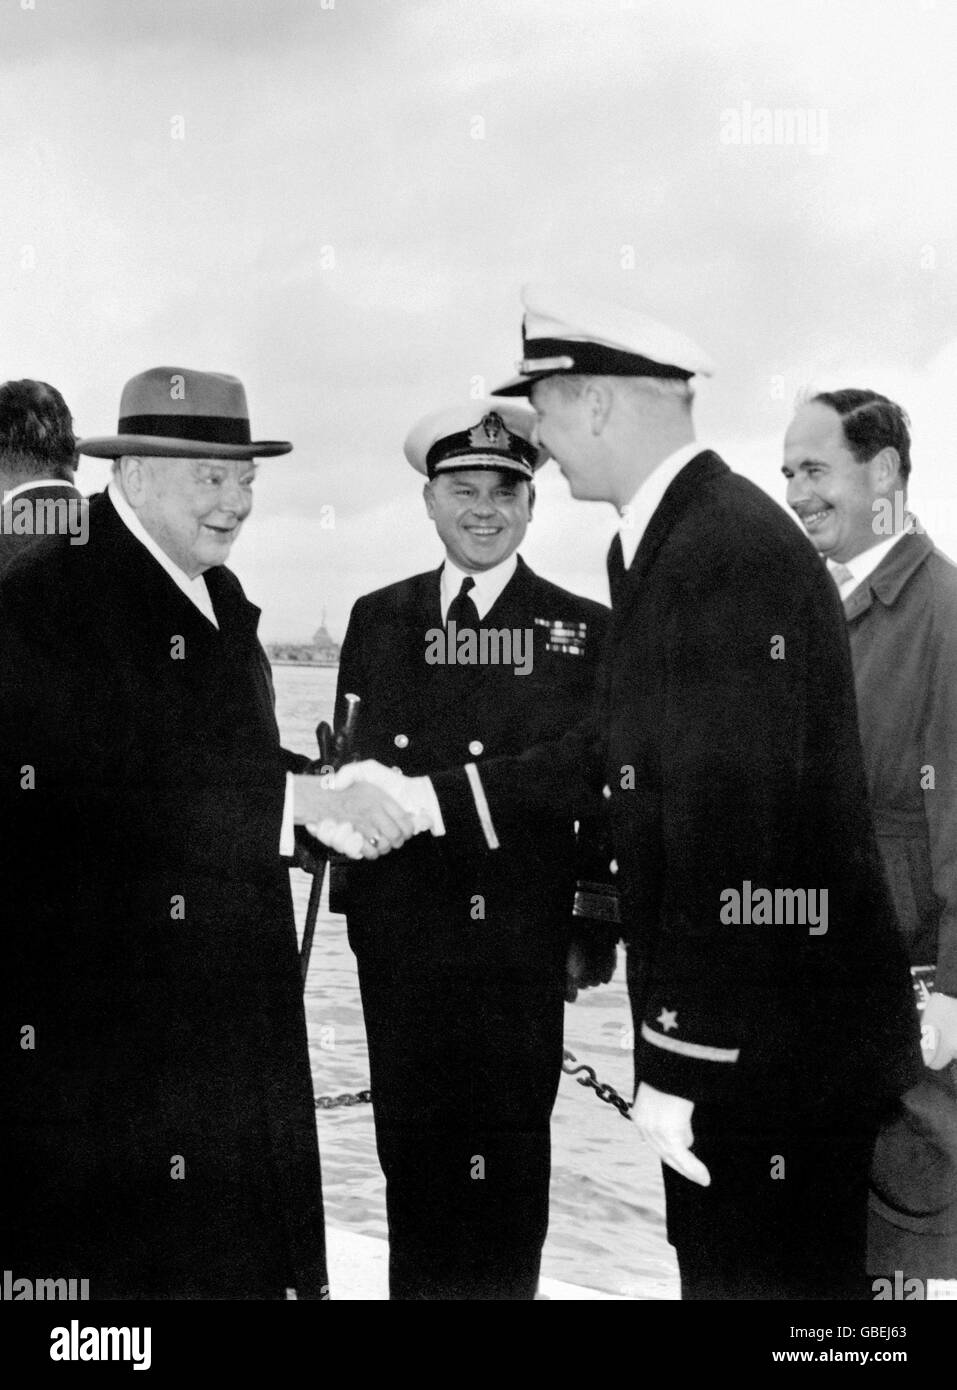 Der Konteradmiral D. F. Powlett, RN, Flag Officer, der in Gibraltar kommandiert, sieht zu, wie Sir Winston Churchill Ensign Glenn J. SEDAM von der United States Navy trifft. Ensign SEDAM von der USS Northampton besuchte Gibraltar nach Übungen im Mittelmeer. Stockfoto